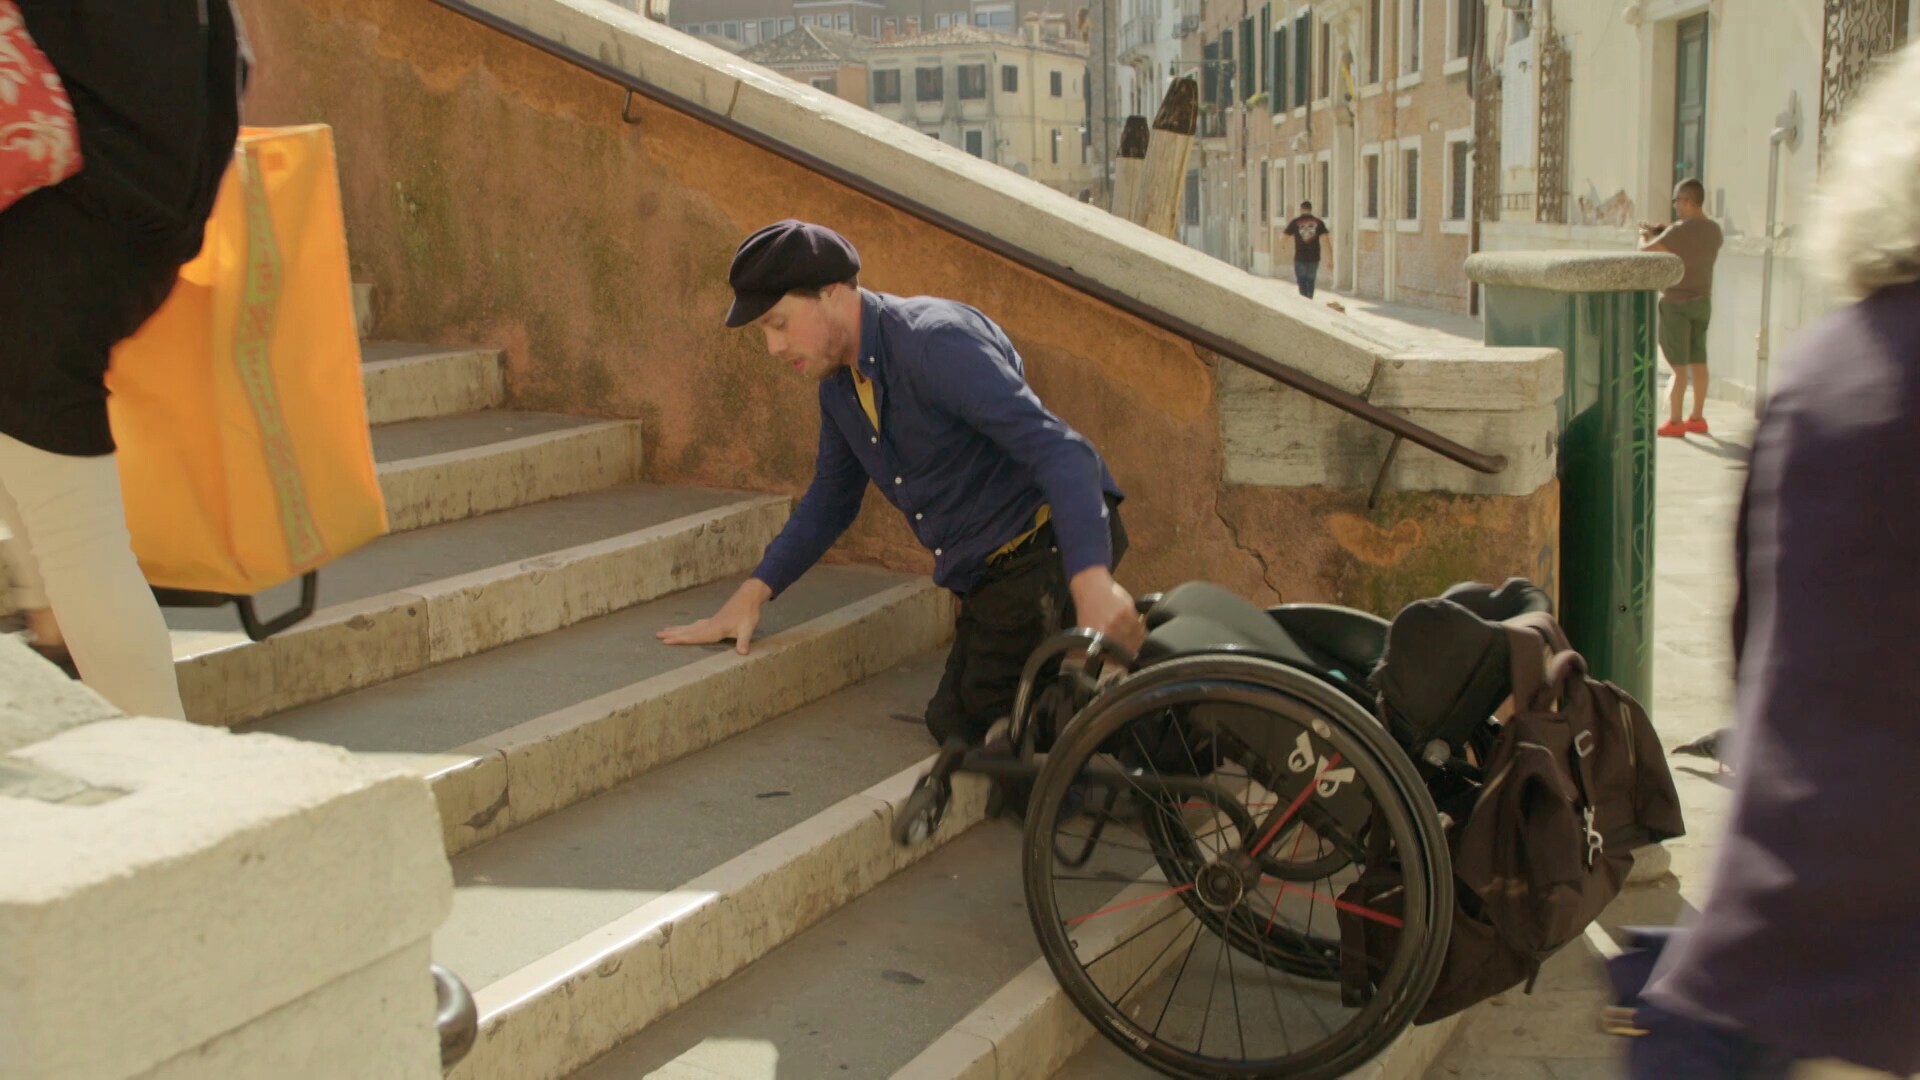 Dalam film dokumenter Itzhak, disabilitas bukanlah sebuah tantangan yang harus diatasi dengan cara yang menginspirasi